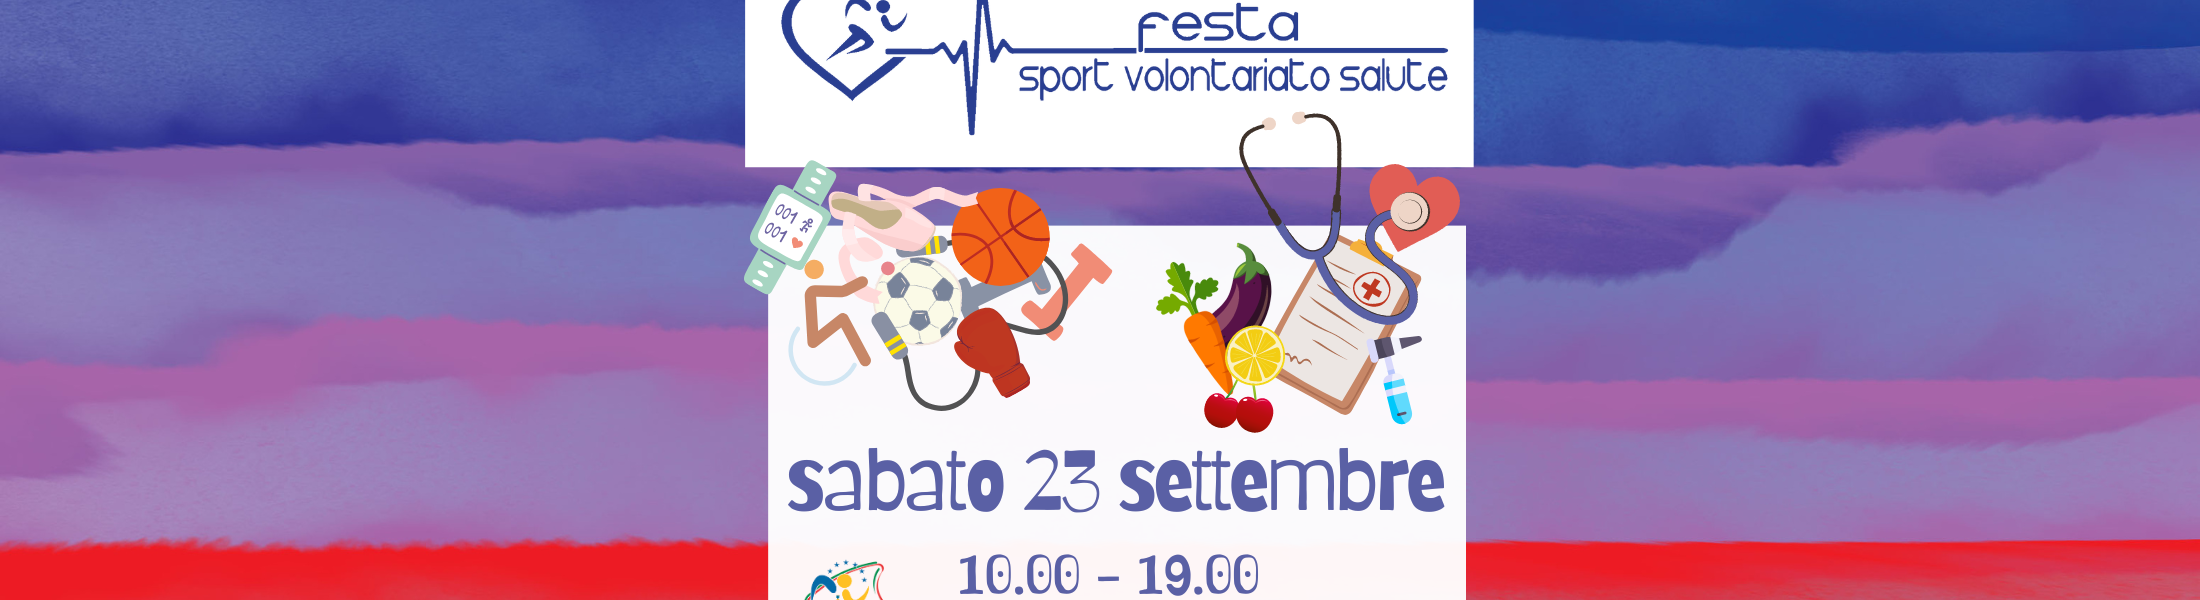 festa dello sport sabato 23 settembre